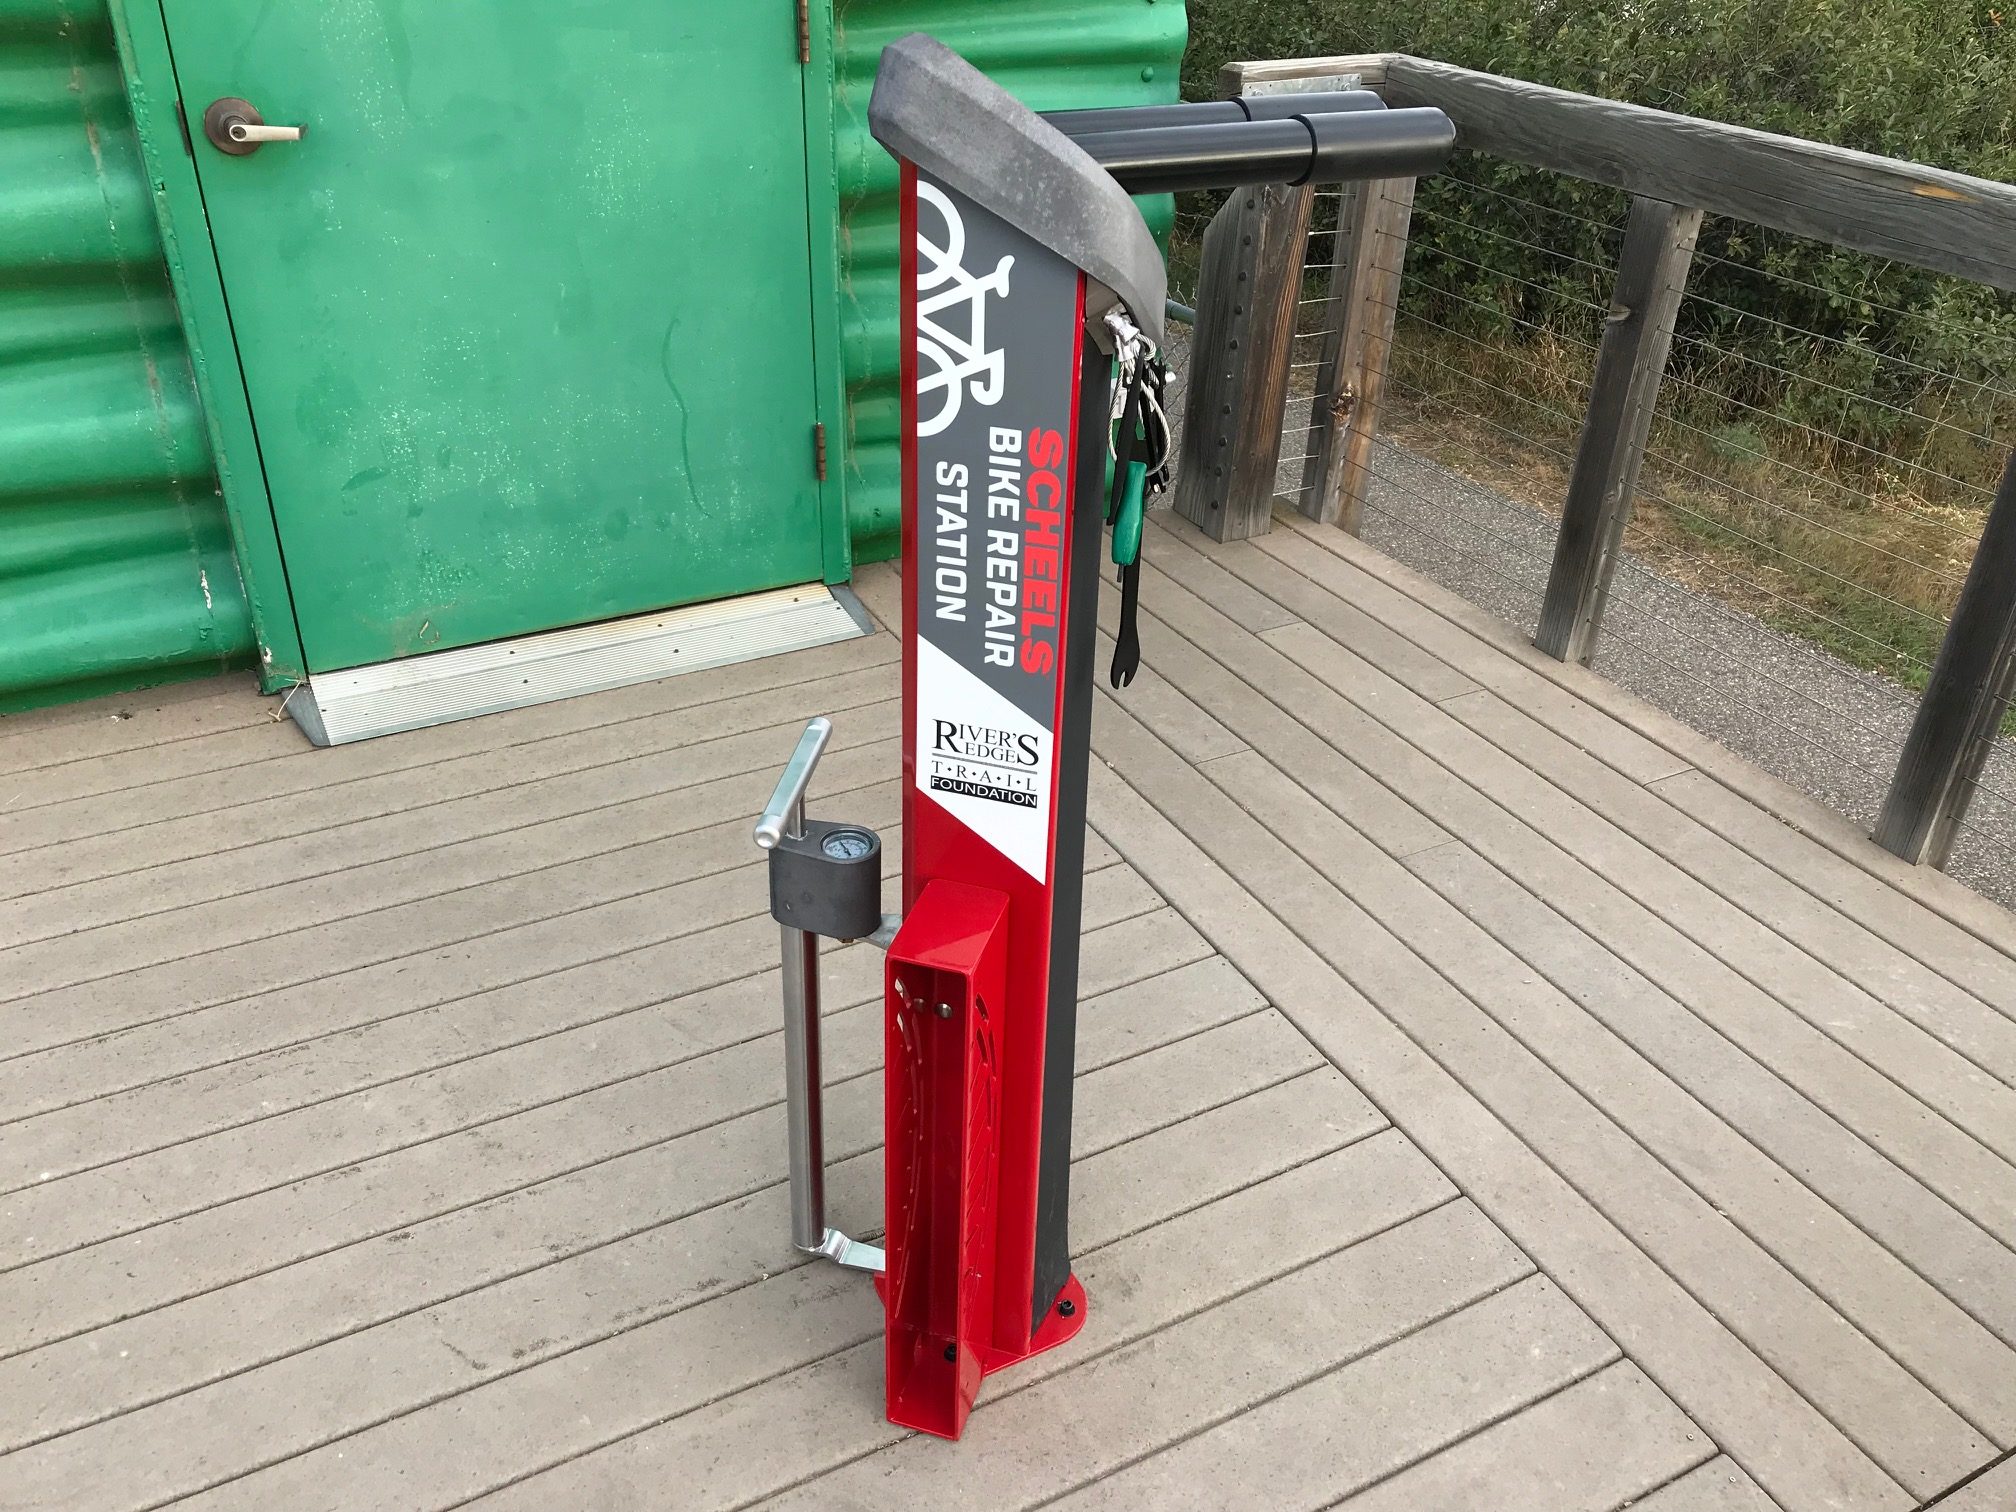 Bike Repair Station